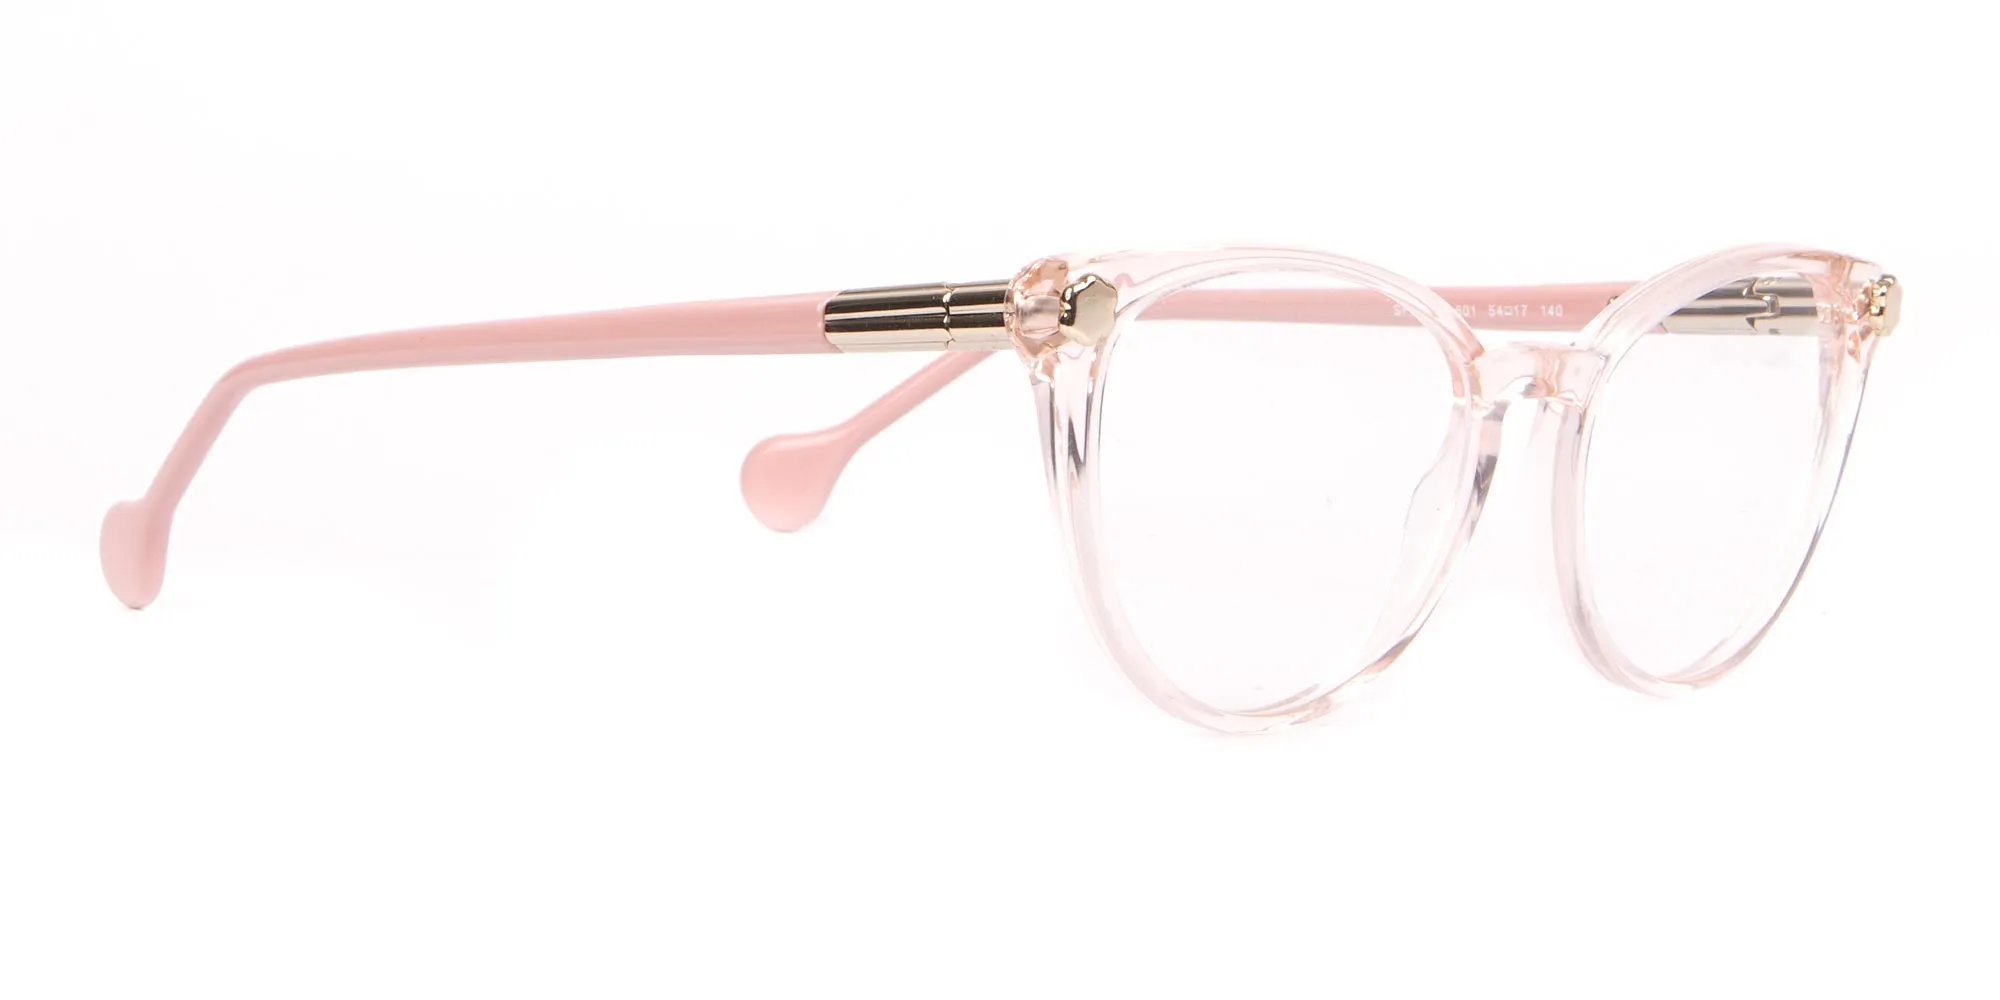 Salvatore Ferragamo SF2837 Women's Cateye Glasses Rosy Pink-2